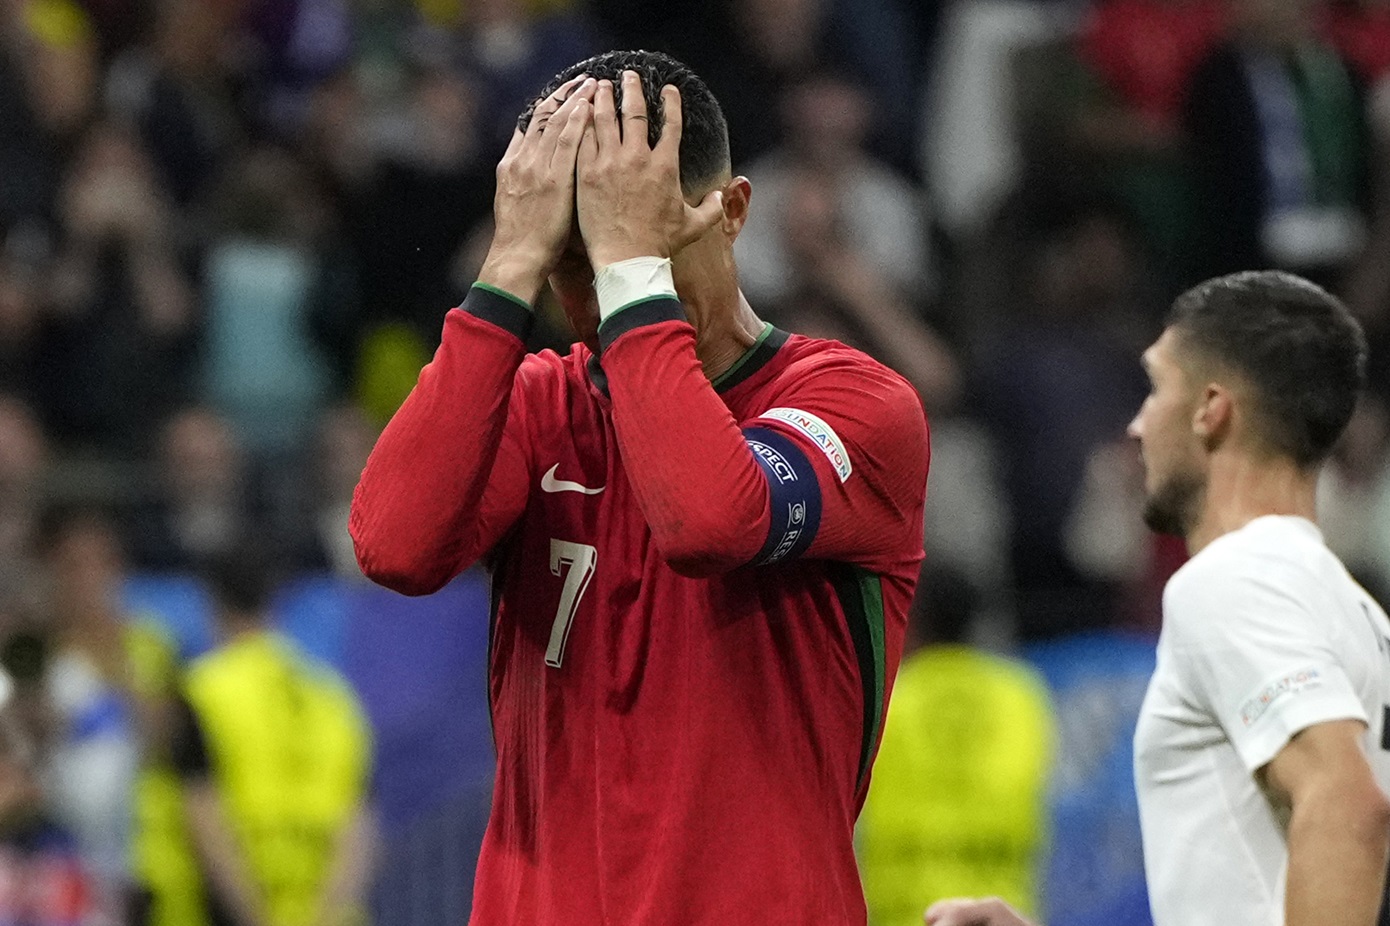 Ο Κριστιάνο Ρονάλντο ξέσπασε σε κλάματα μετά το χαμένο πέναλτι στον αγώνα Πορτογαλία-Σλοβενία